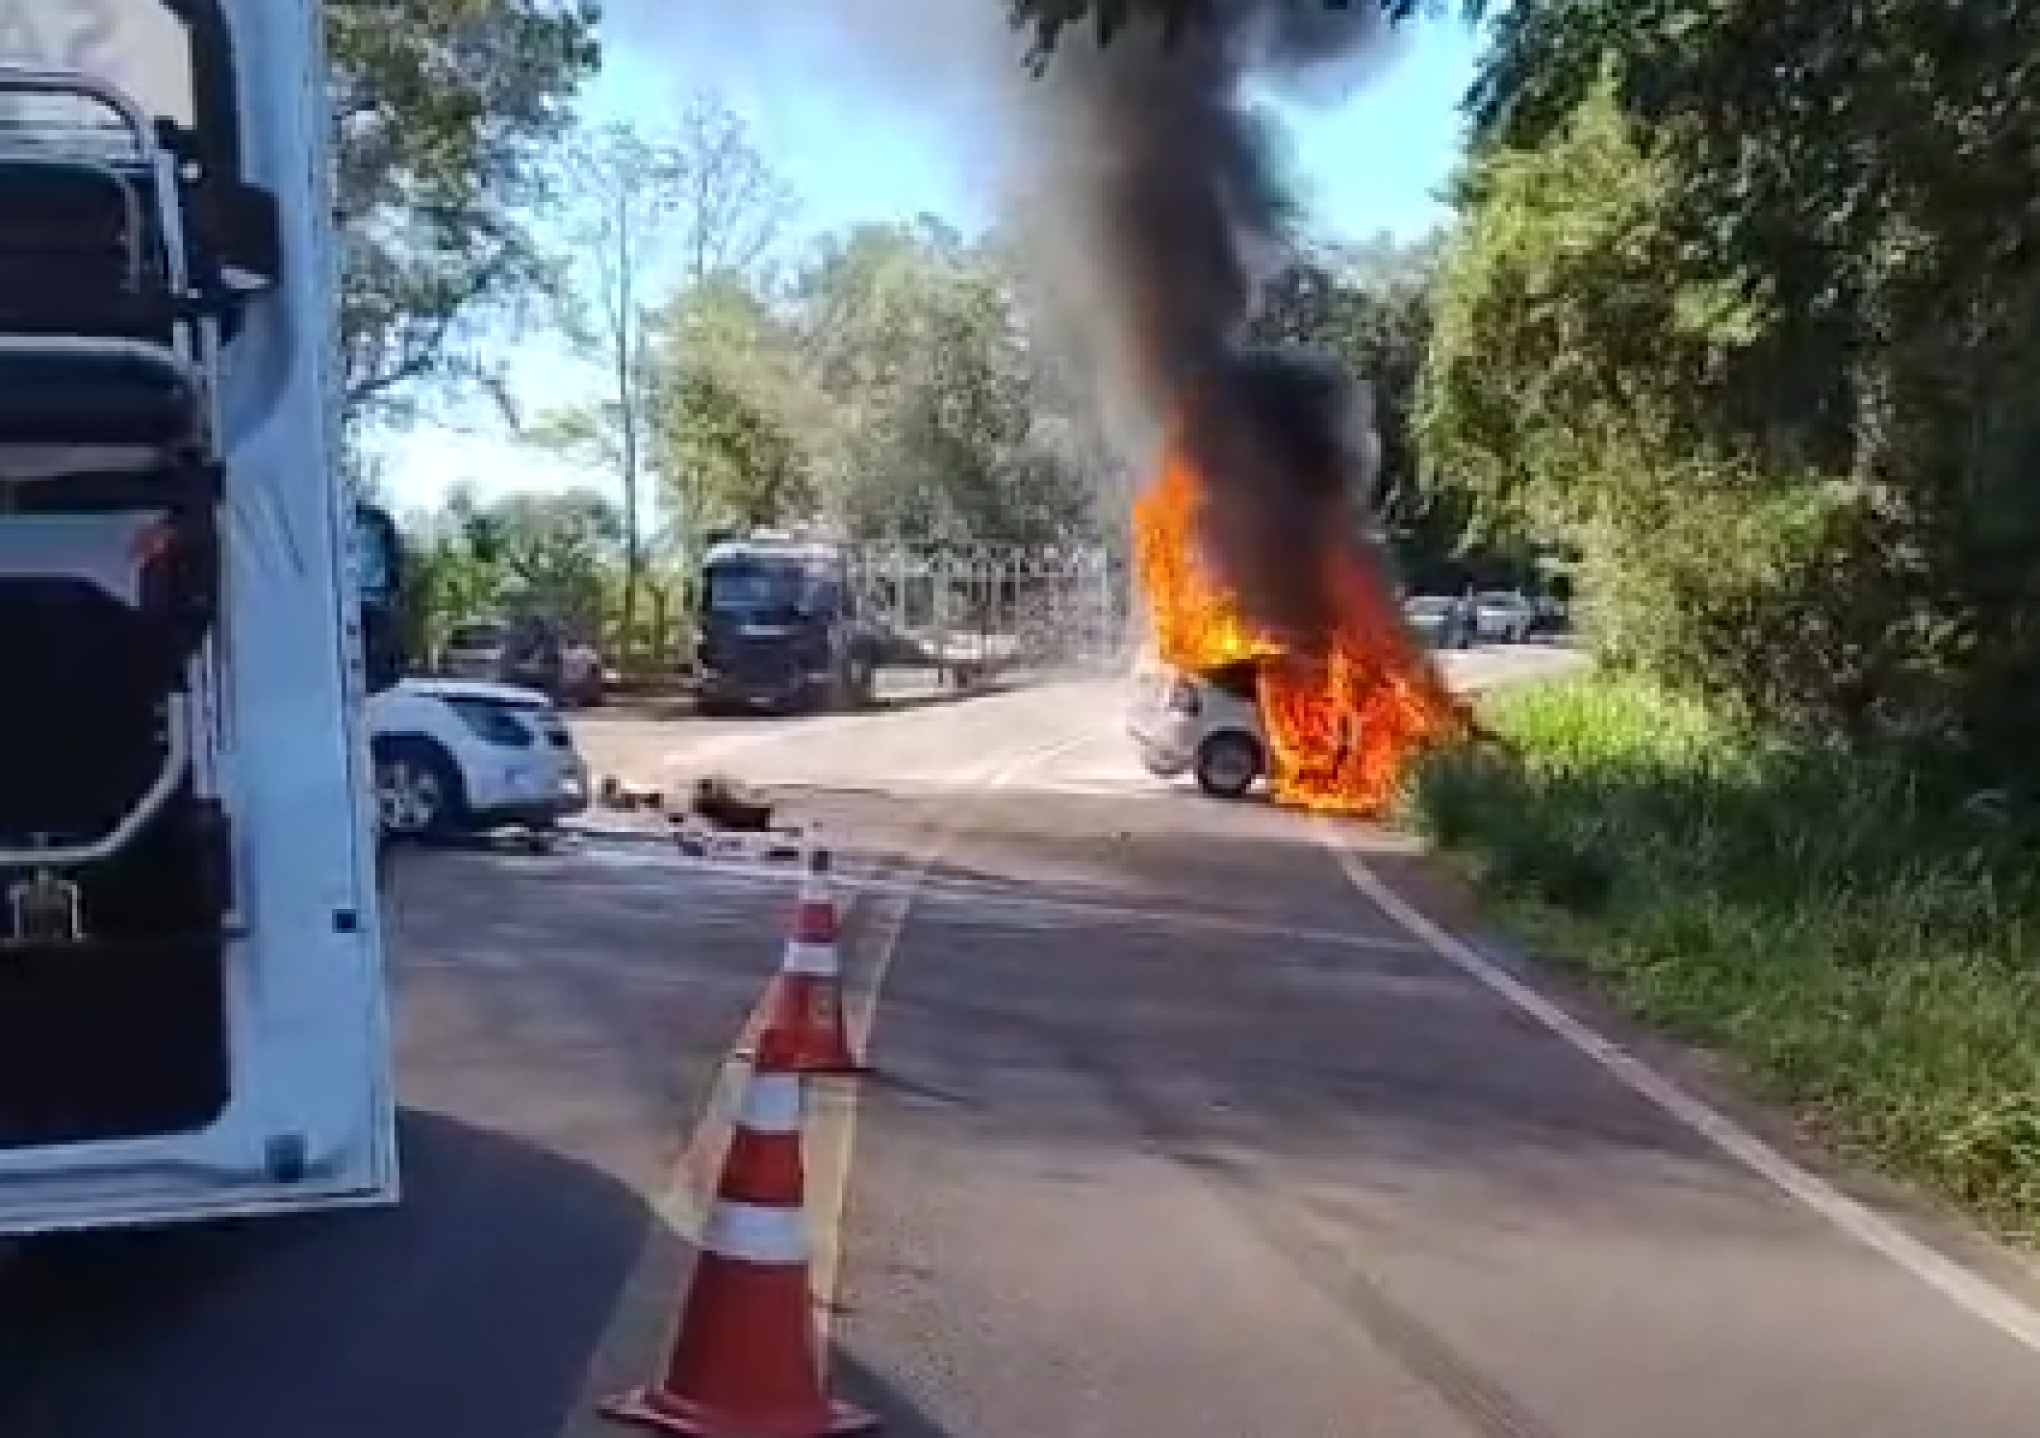 ACIDENTE DE TRÂNSITO: Carro pega fogo após colisão com outro veículo na RS-020